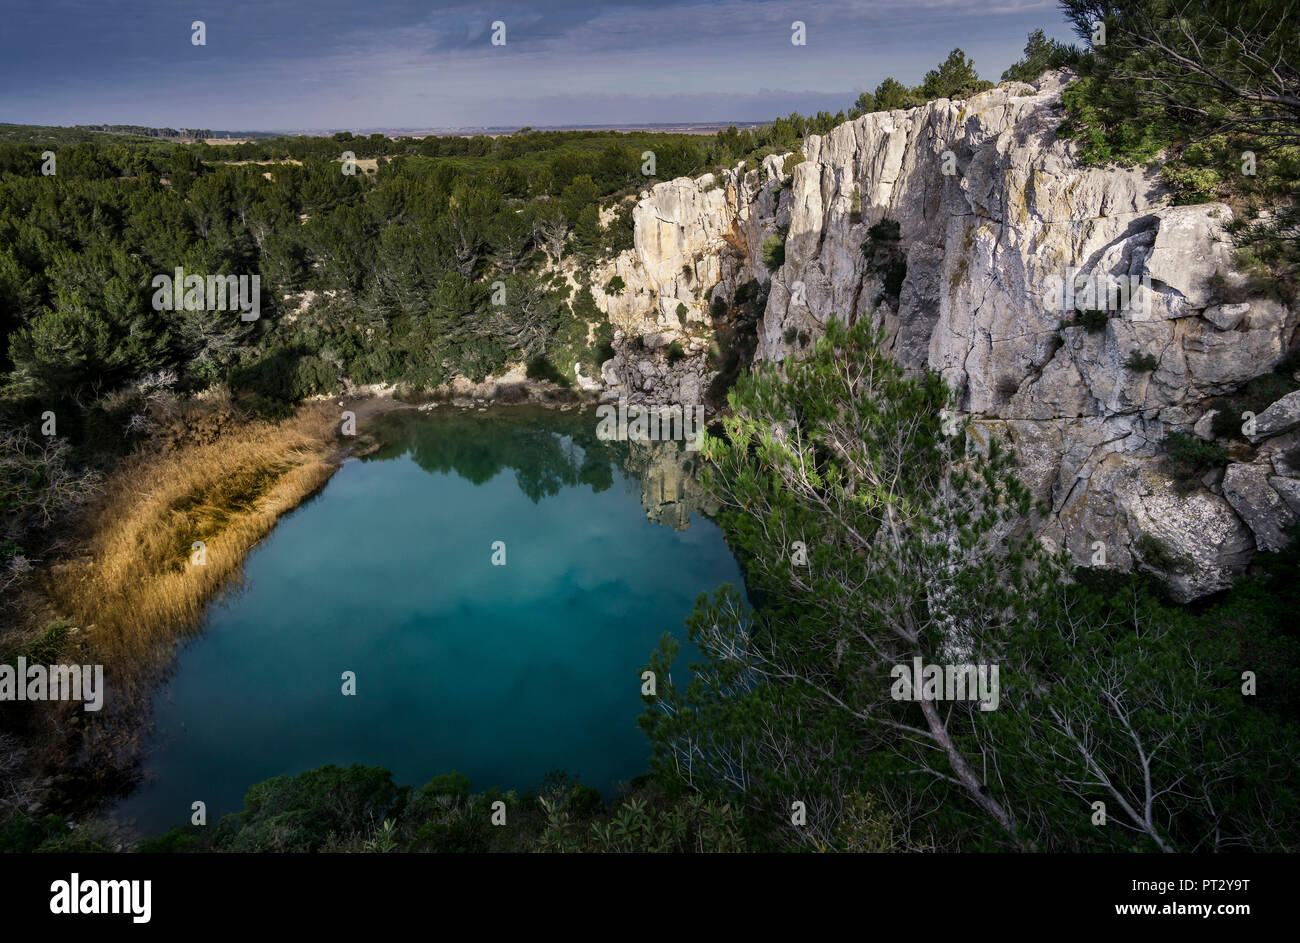 Gorges de calcaire à Fleury d'Aude, qui est relié à la mer Méditerranée et  forme un lac Photo Stock - Alamy